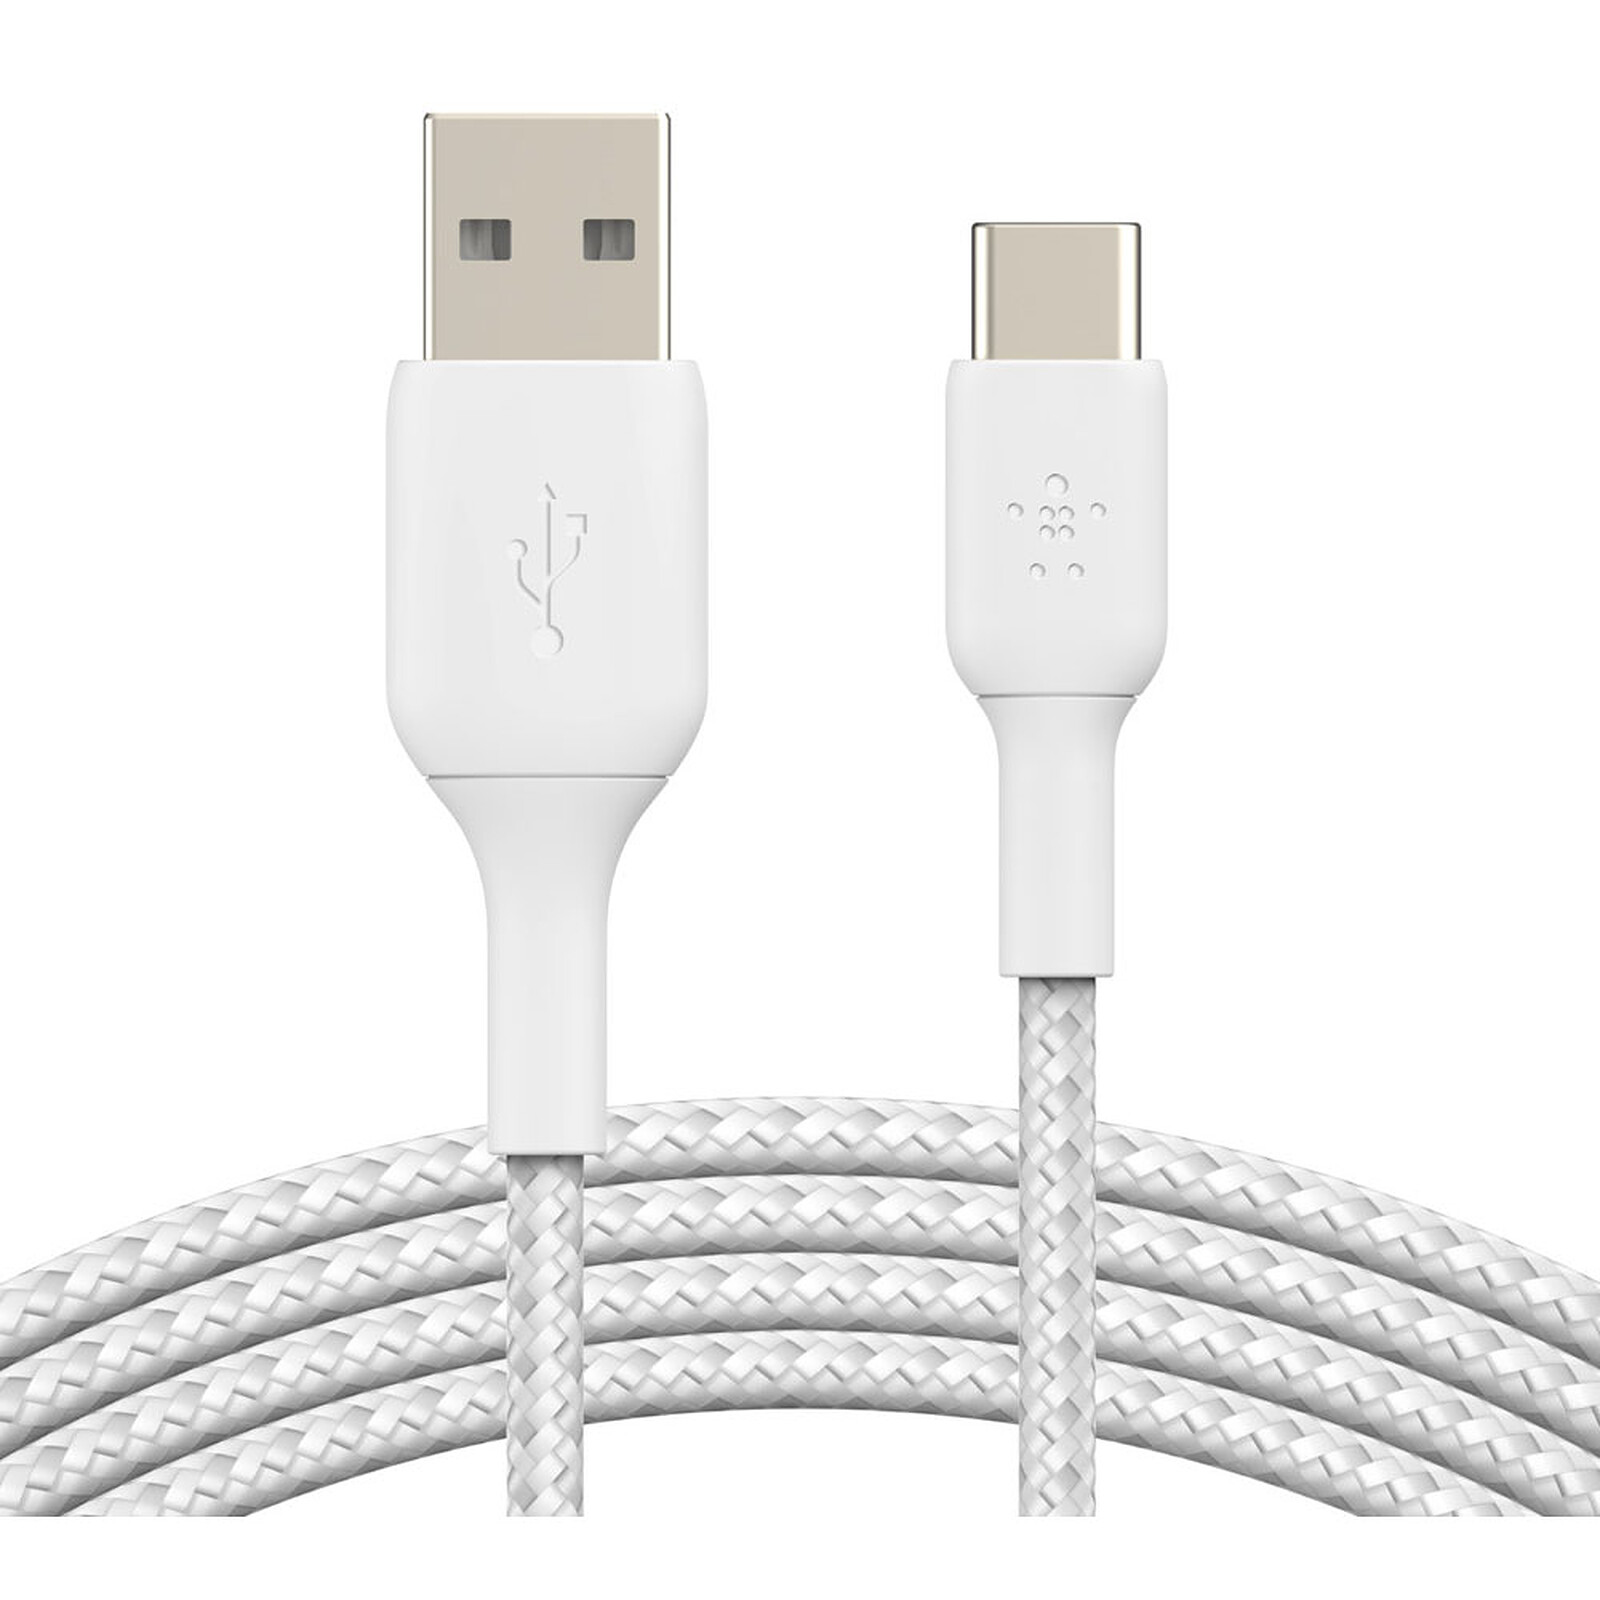 Cordon de charge USB universel pour smartphone/tablette - Câble &  Adaptateur - Garantie 3 ans LDLC